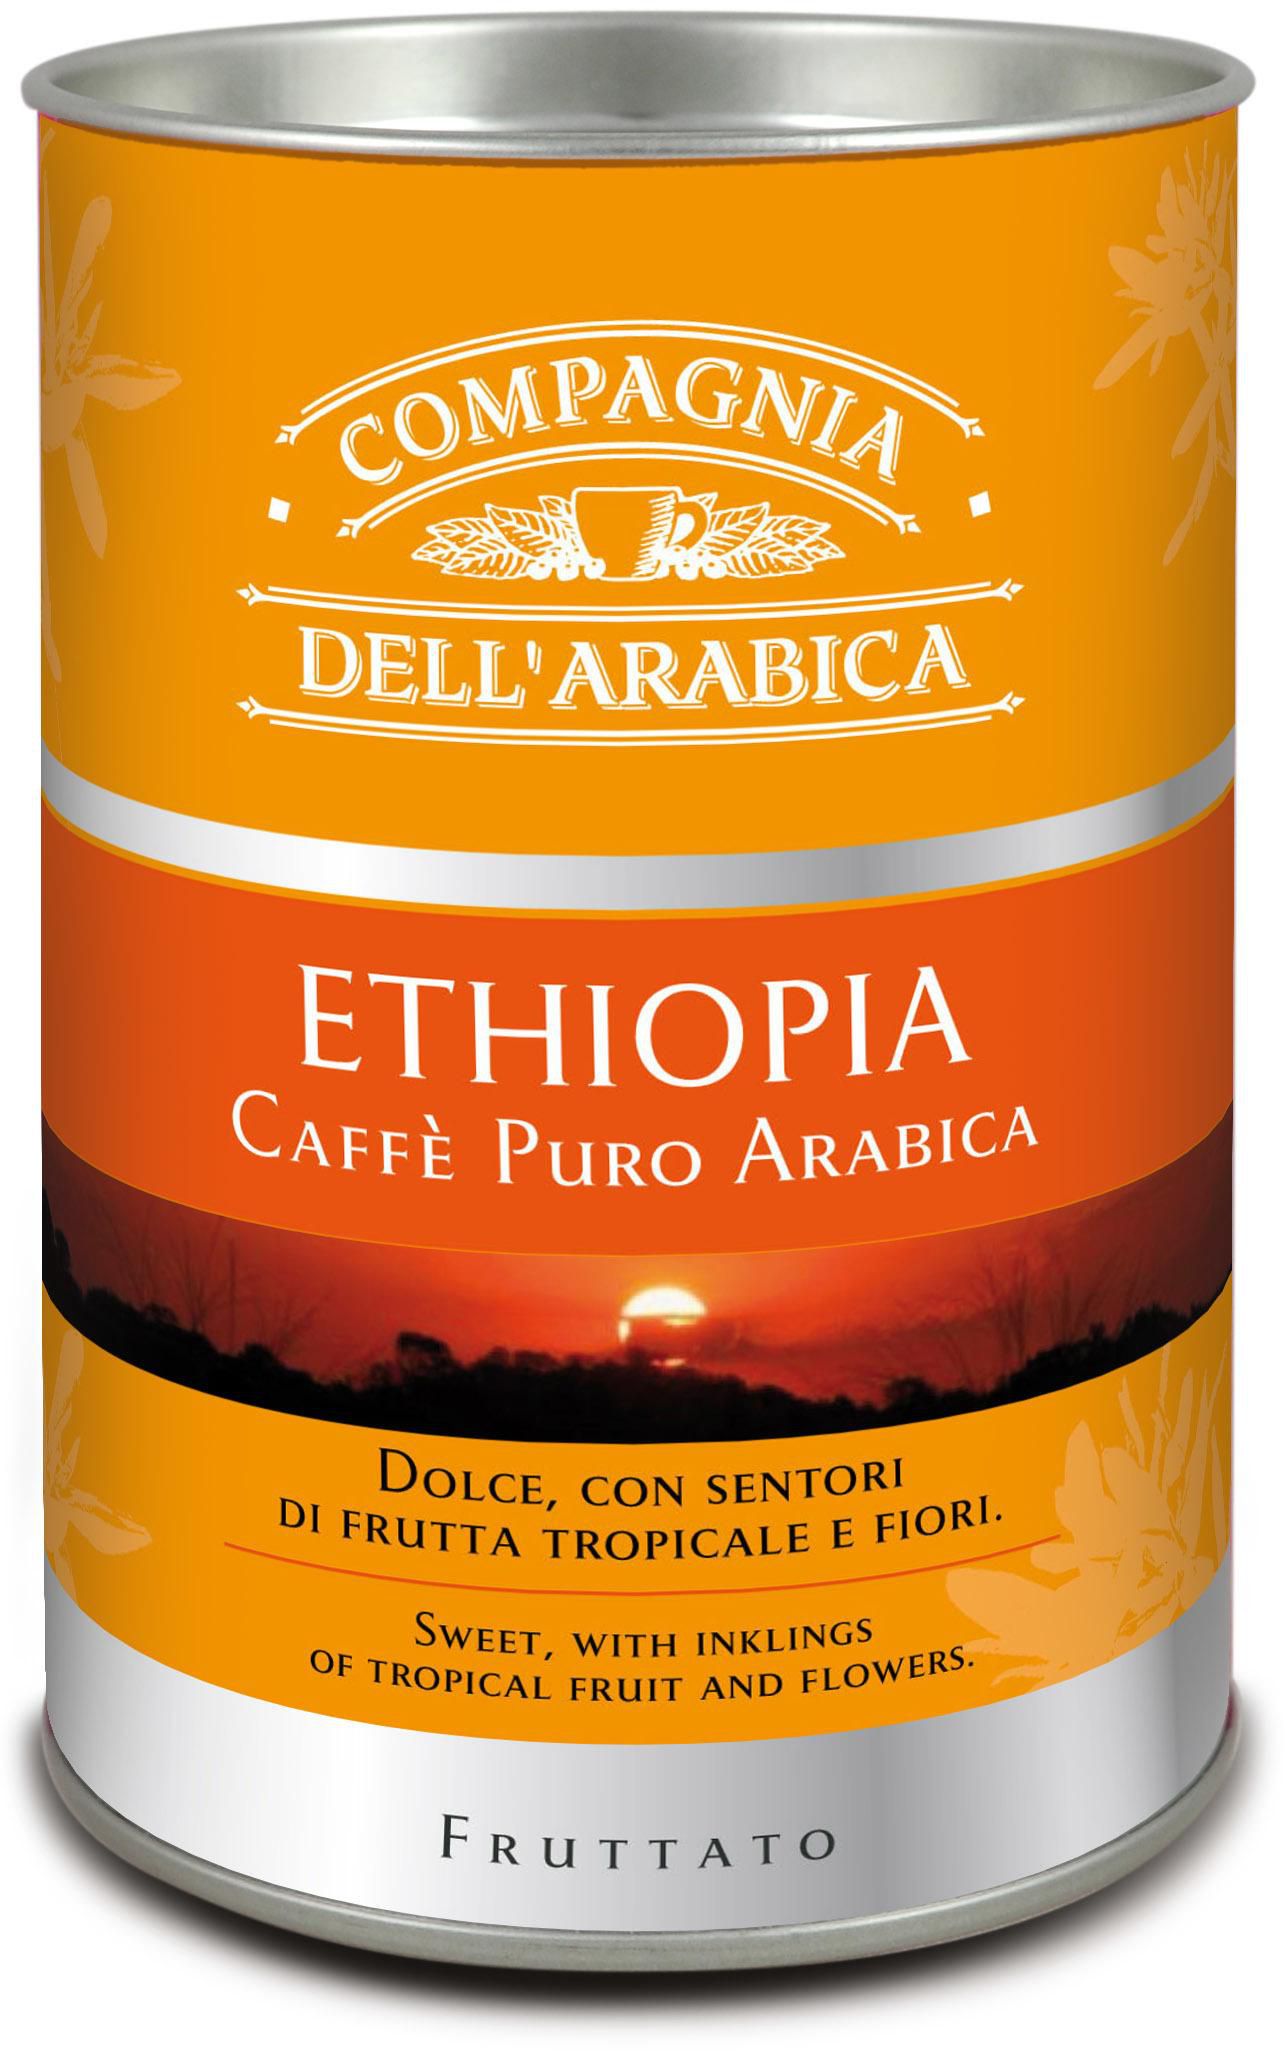 Compagnia Dell' Arabica Carton Tube Ethiopia Ground Coffee 125g 2 Packs